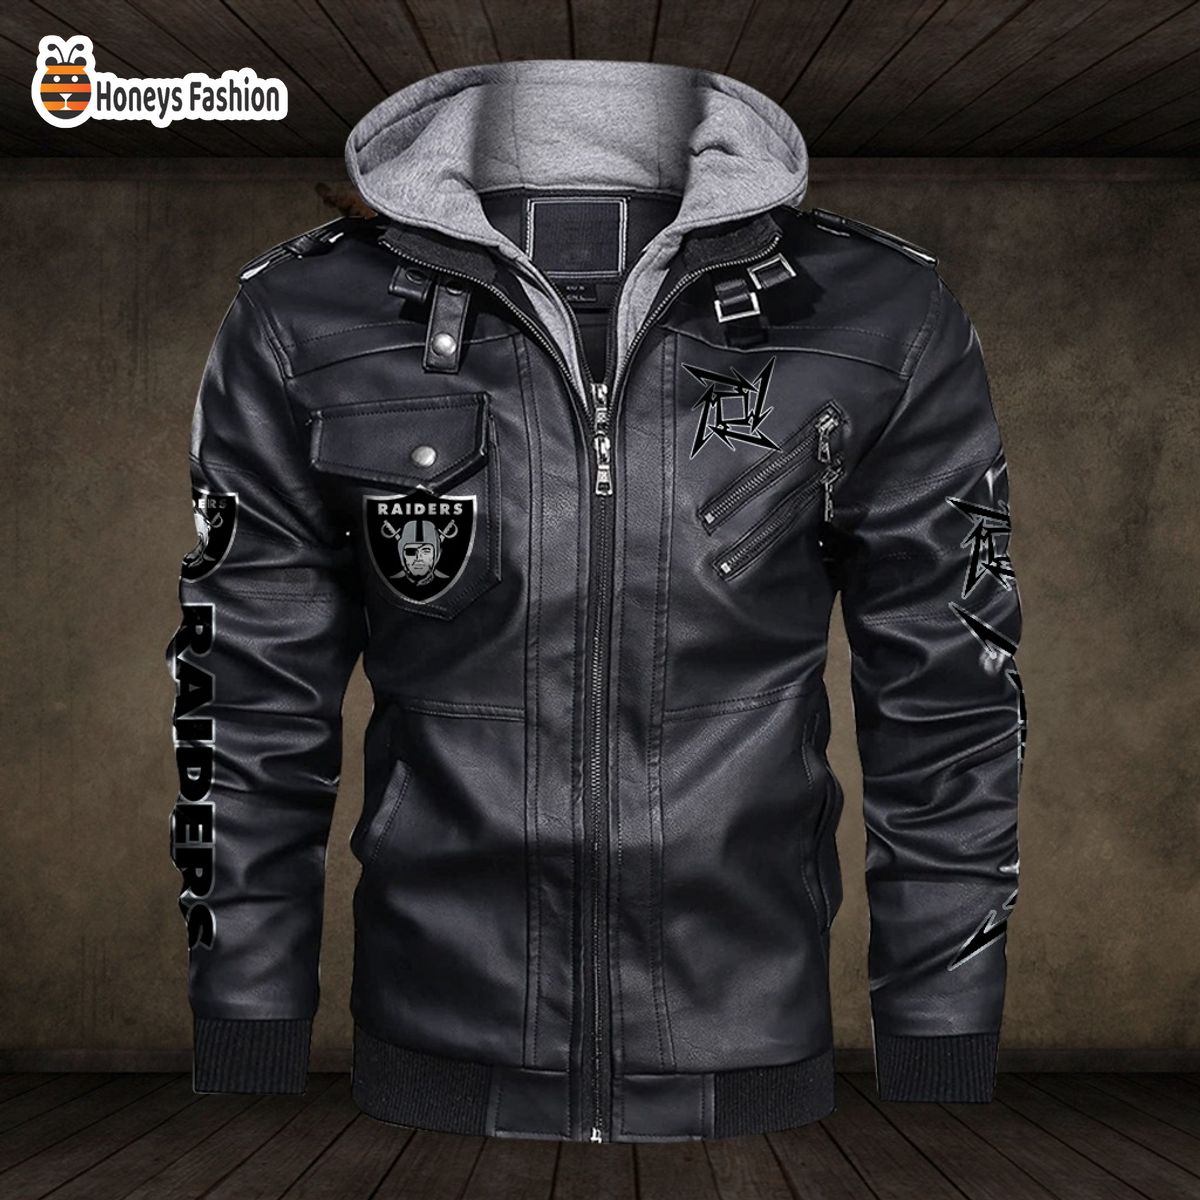 Las Vegas Raiders NFL Metallica 2D PU Leather Jacket